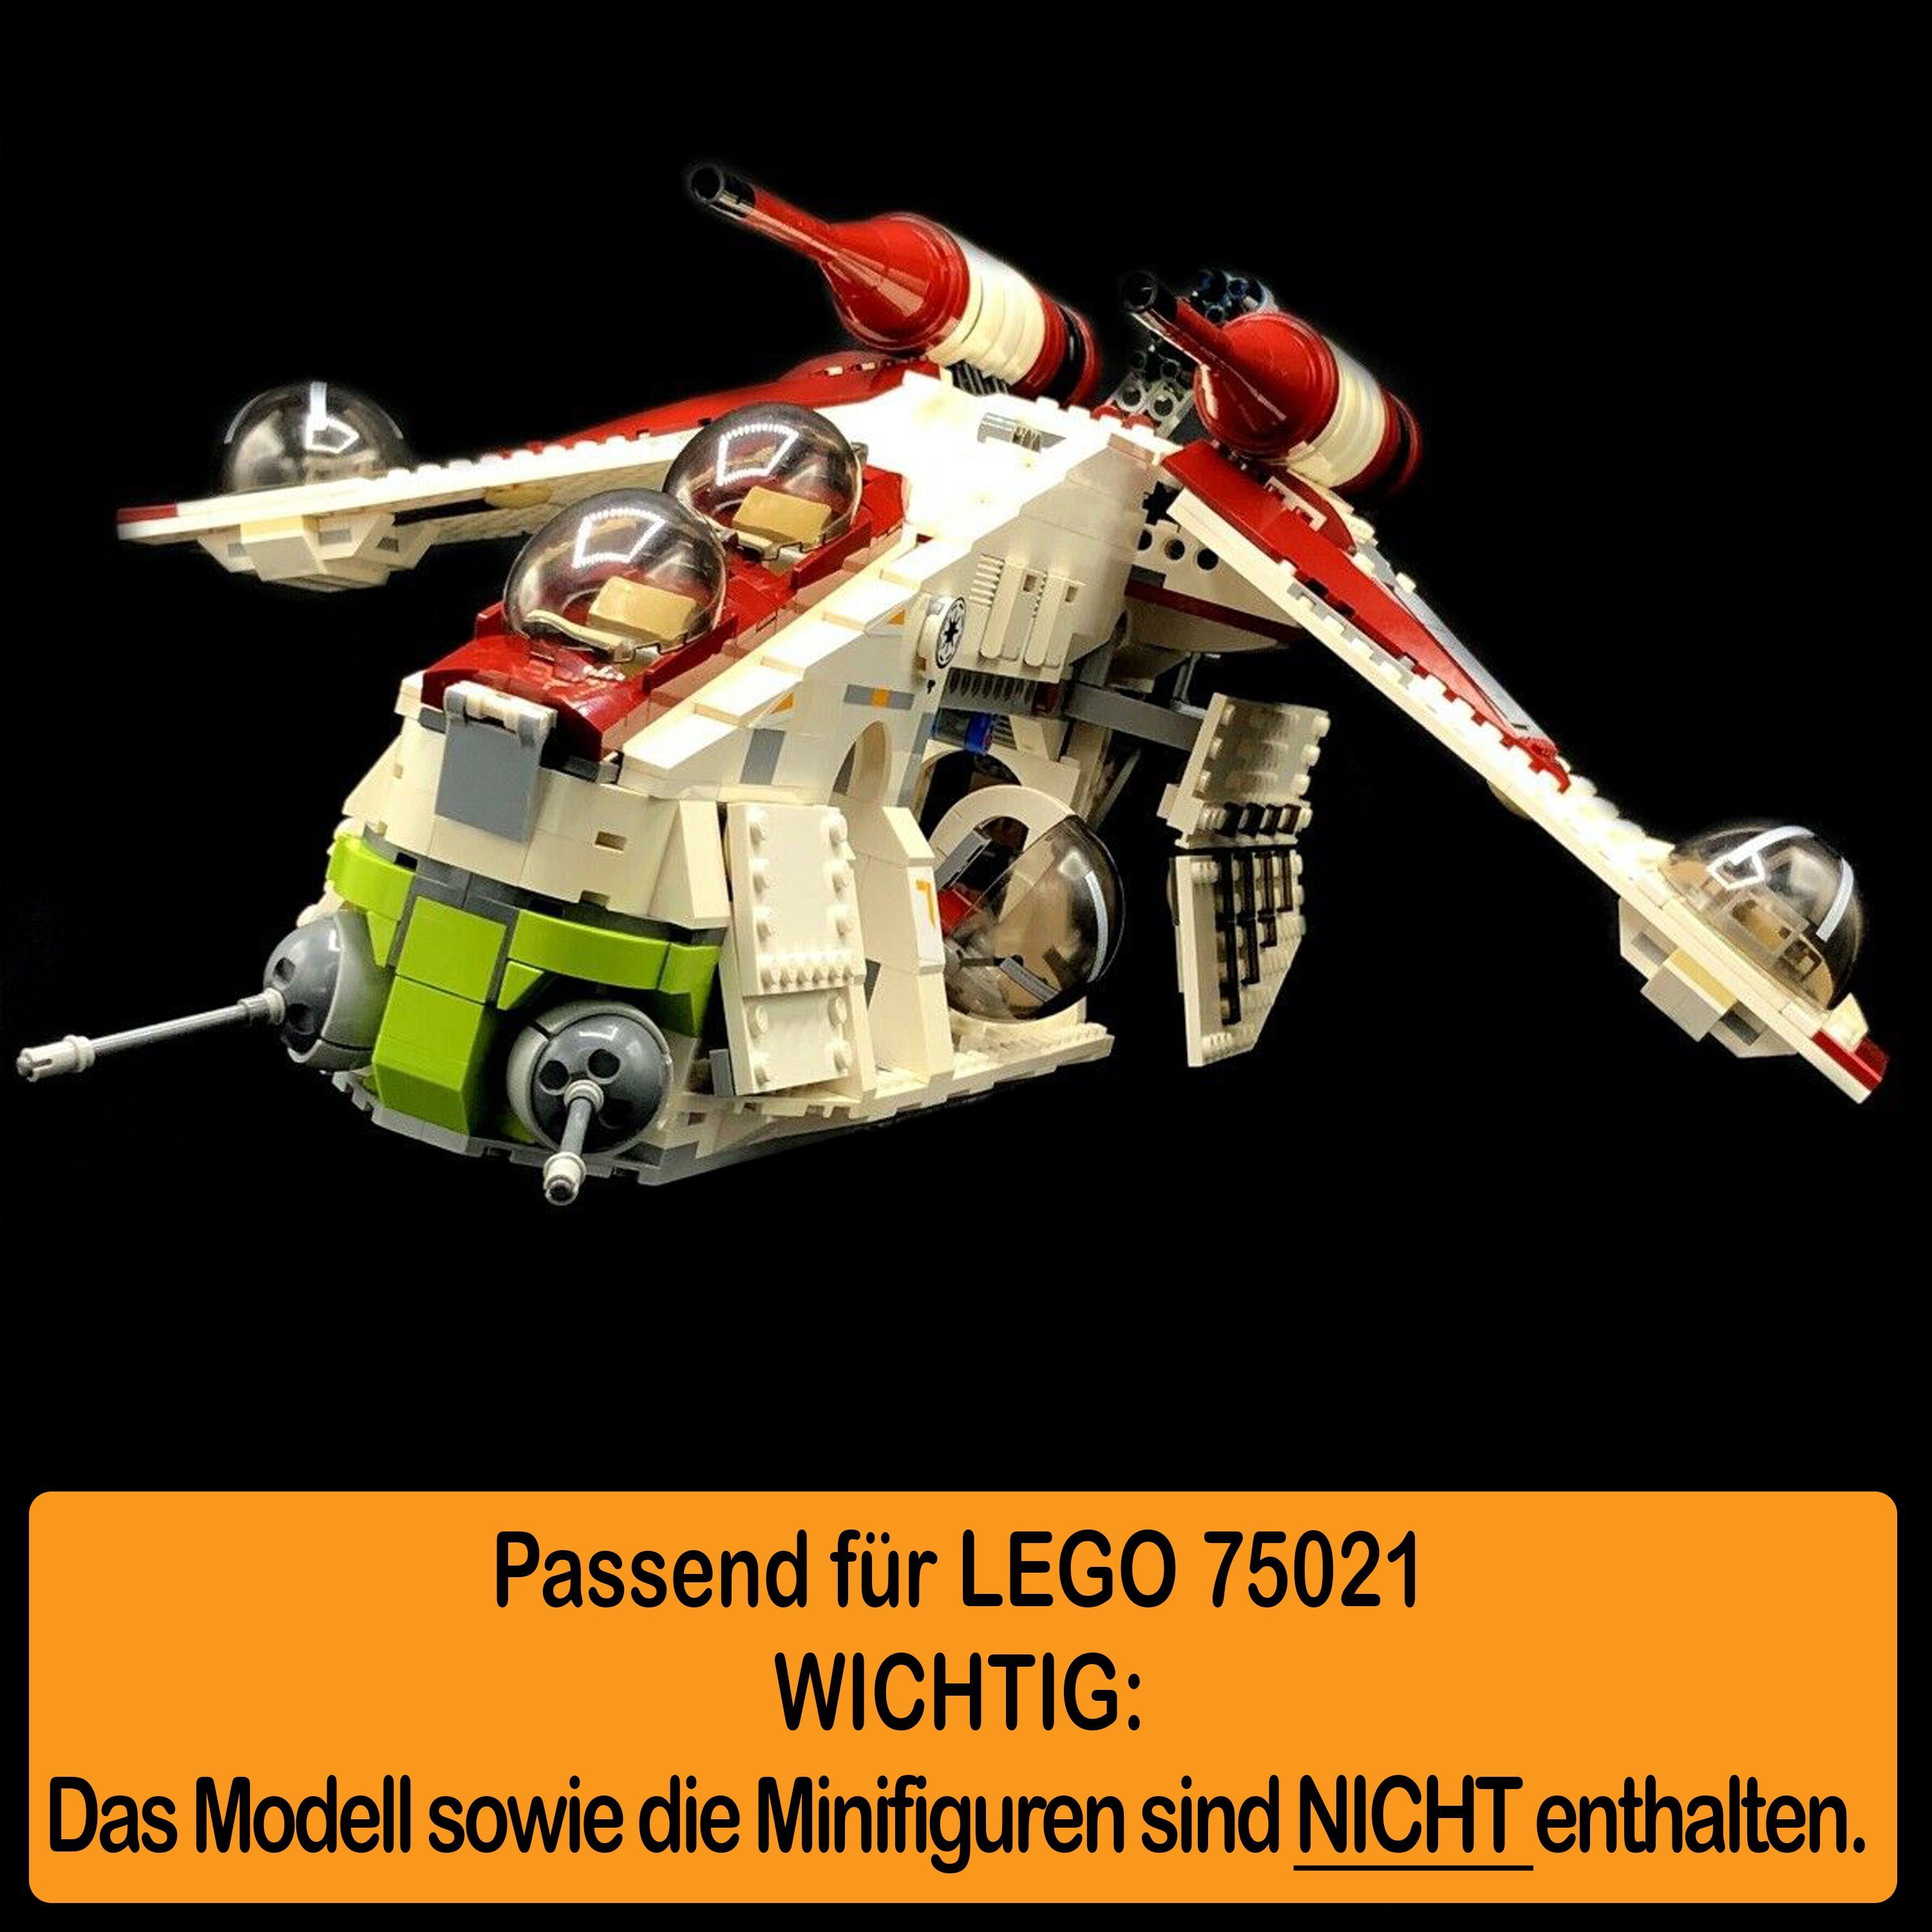 selbst Made 100% Positionen Republic Stand Germany Gunship 75021 LEGO Acryl und Display zum AREA17 in Standfuß Winkel für zusammenbauen), einstellbar, (verschiedene